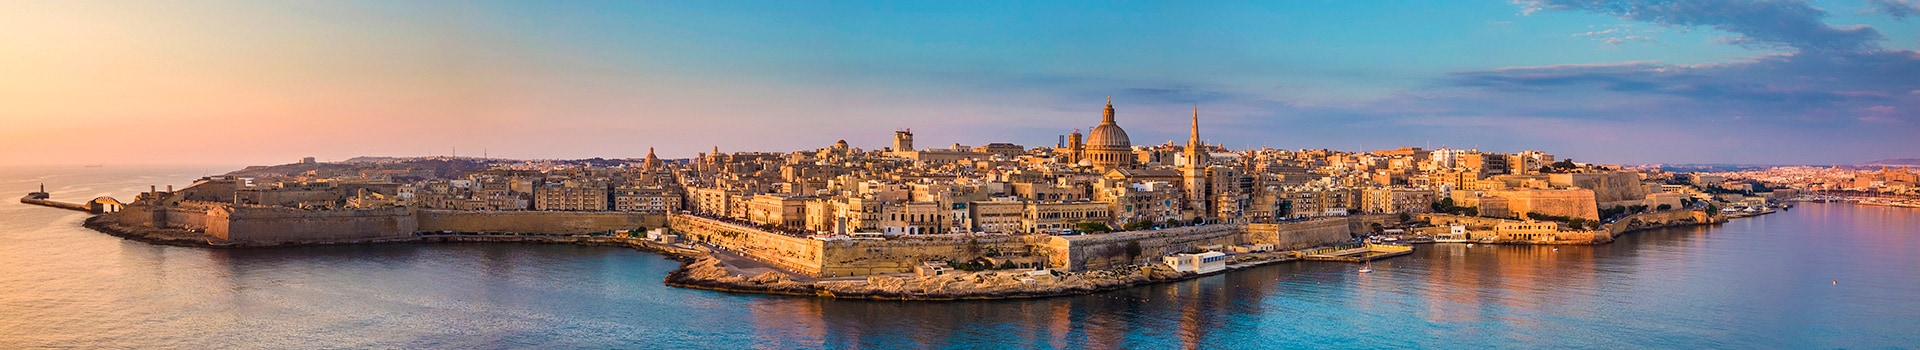 Billetes de Barco de Palermo a Malta